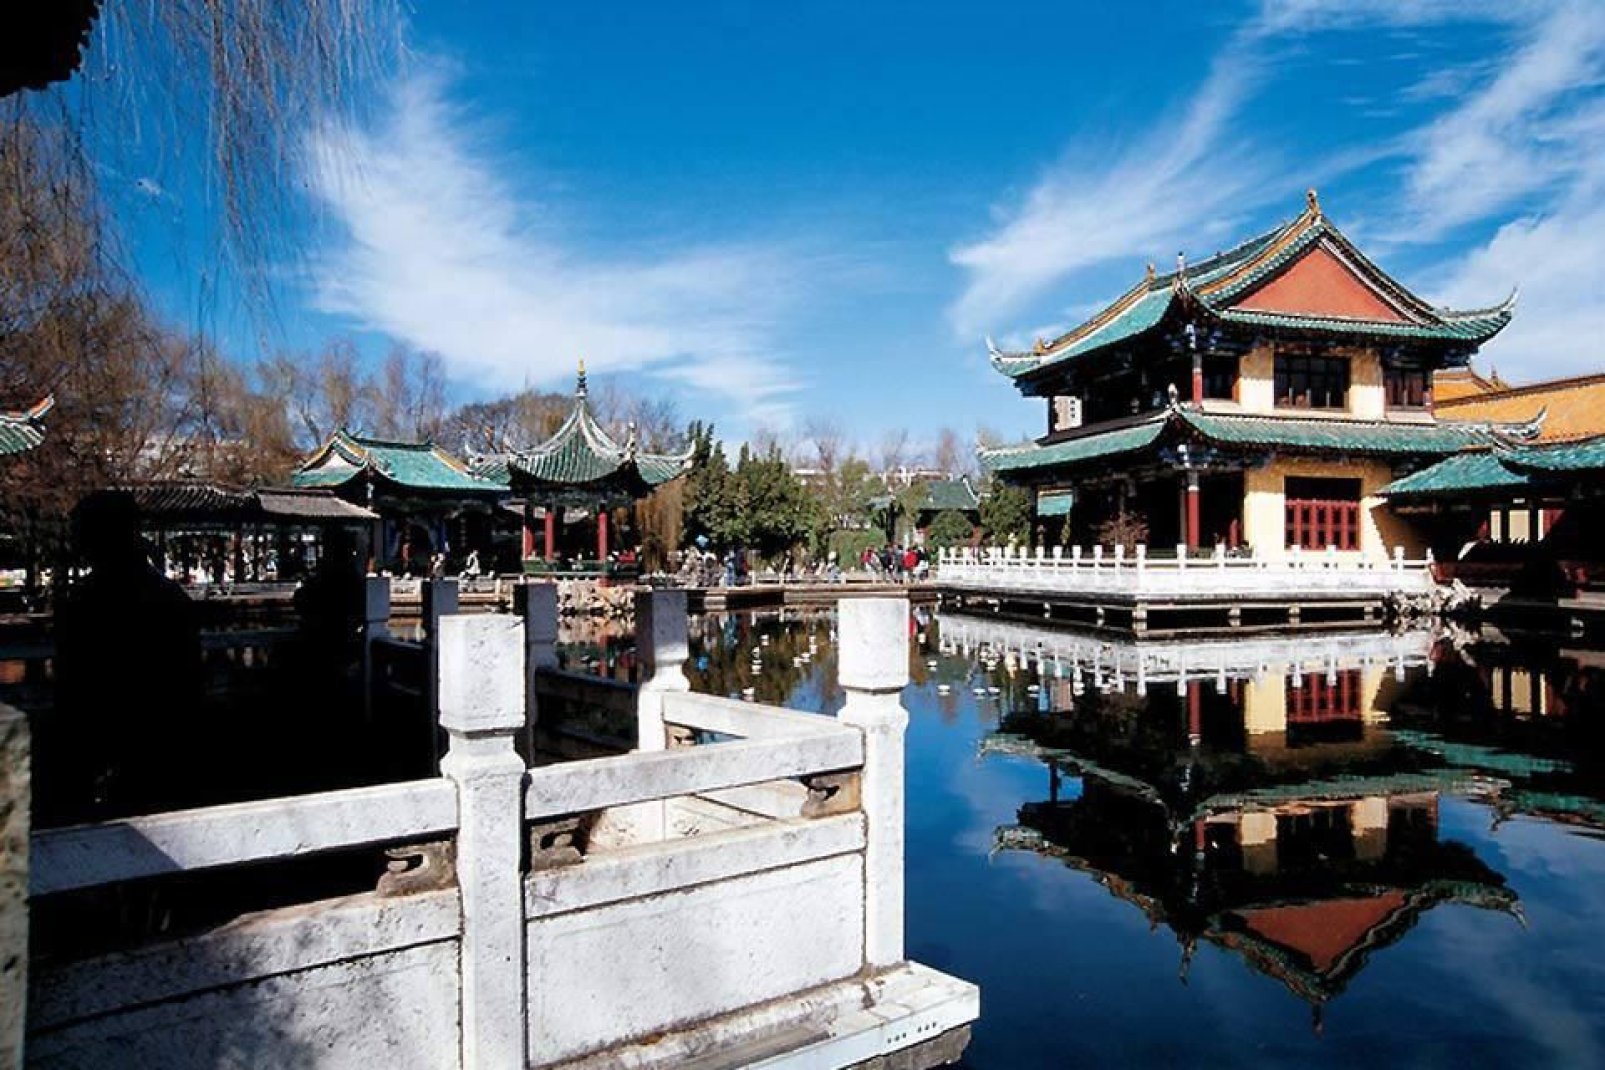 Der Yuantong-Tempel ist der bedeutendste Tempel von Kunming. Er wurde im 8. und 9. Jahrhundert unter der Tang-Dynastie errichtet.